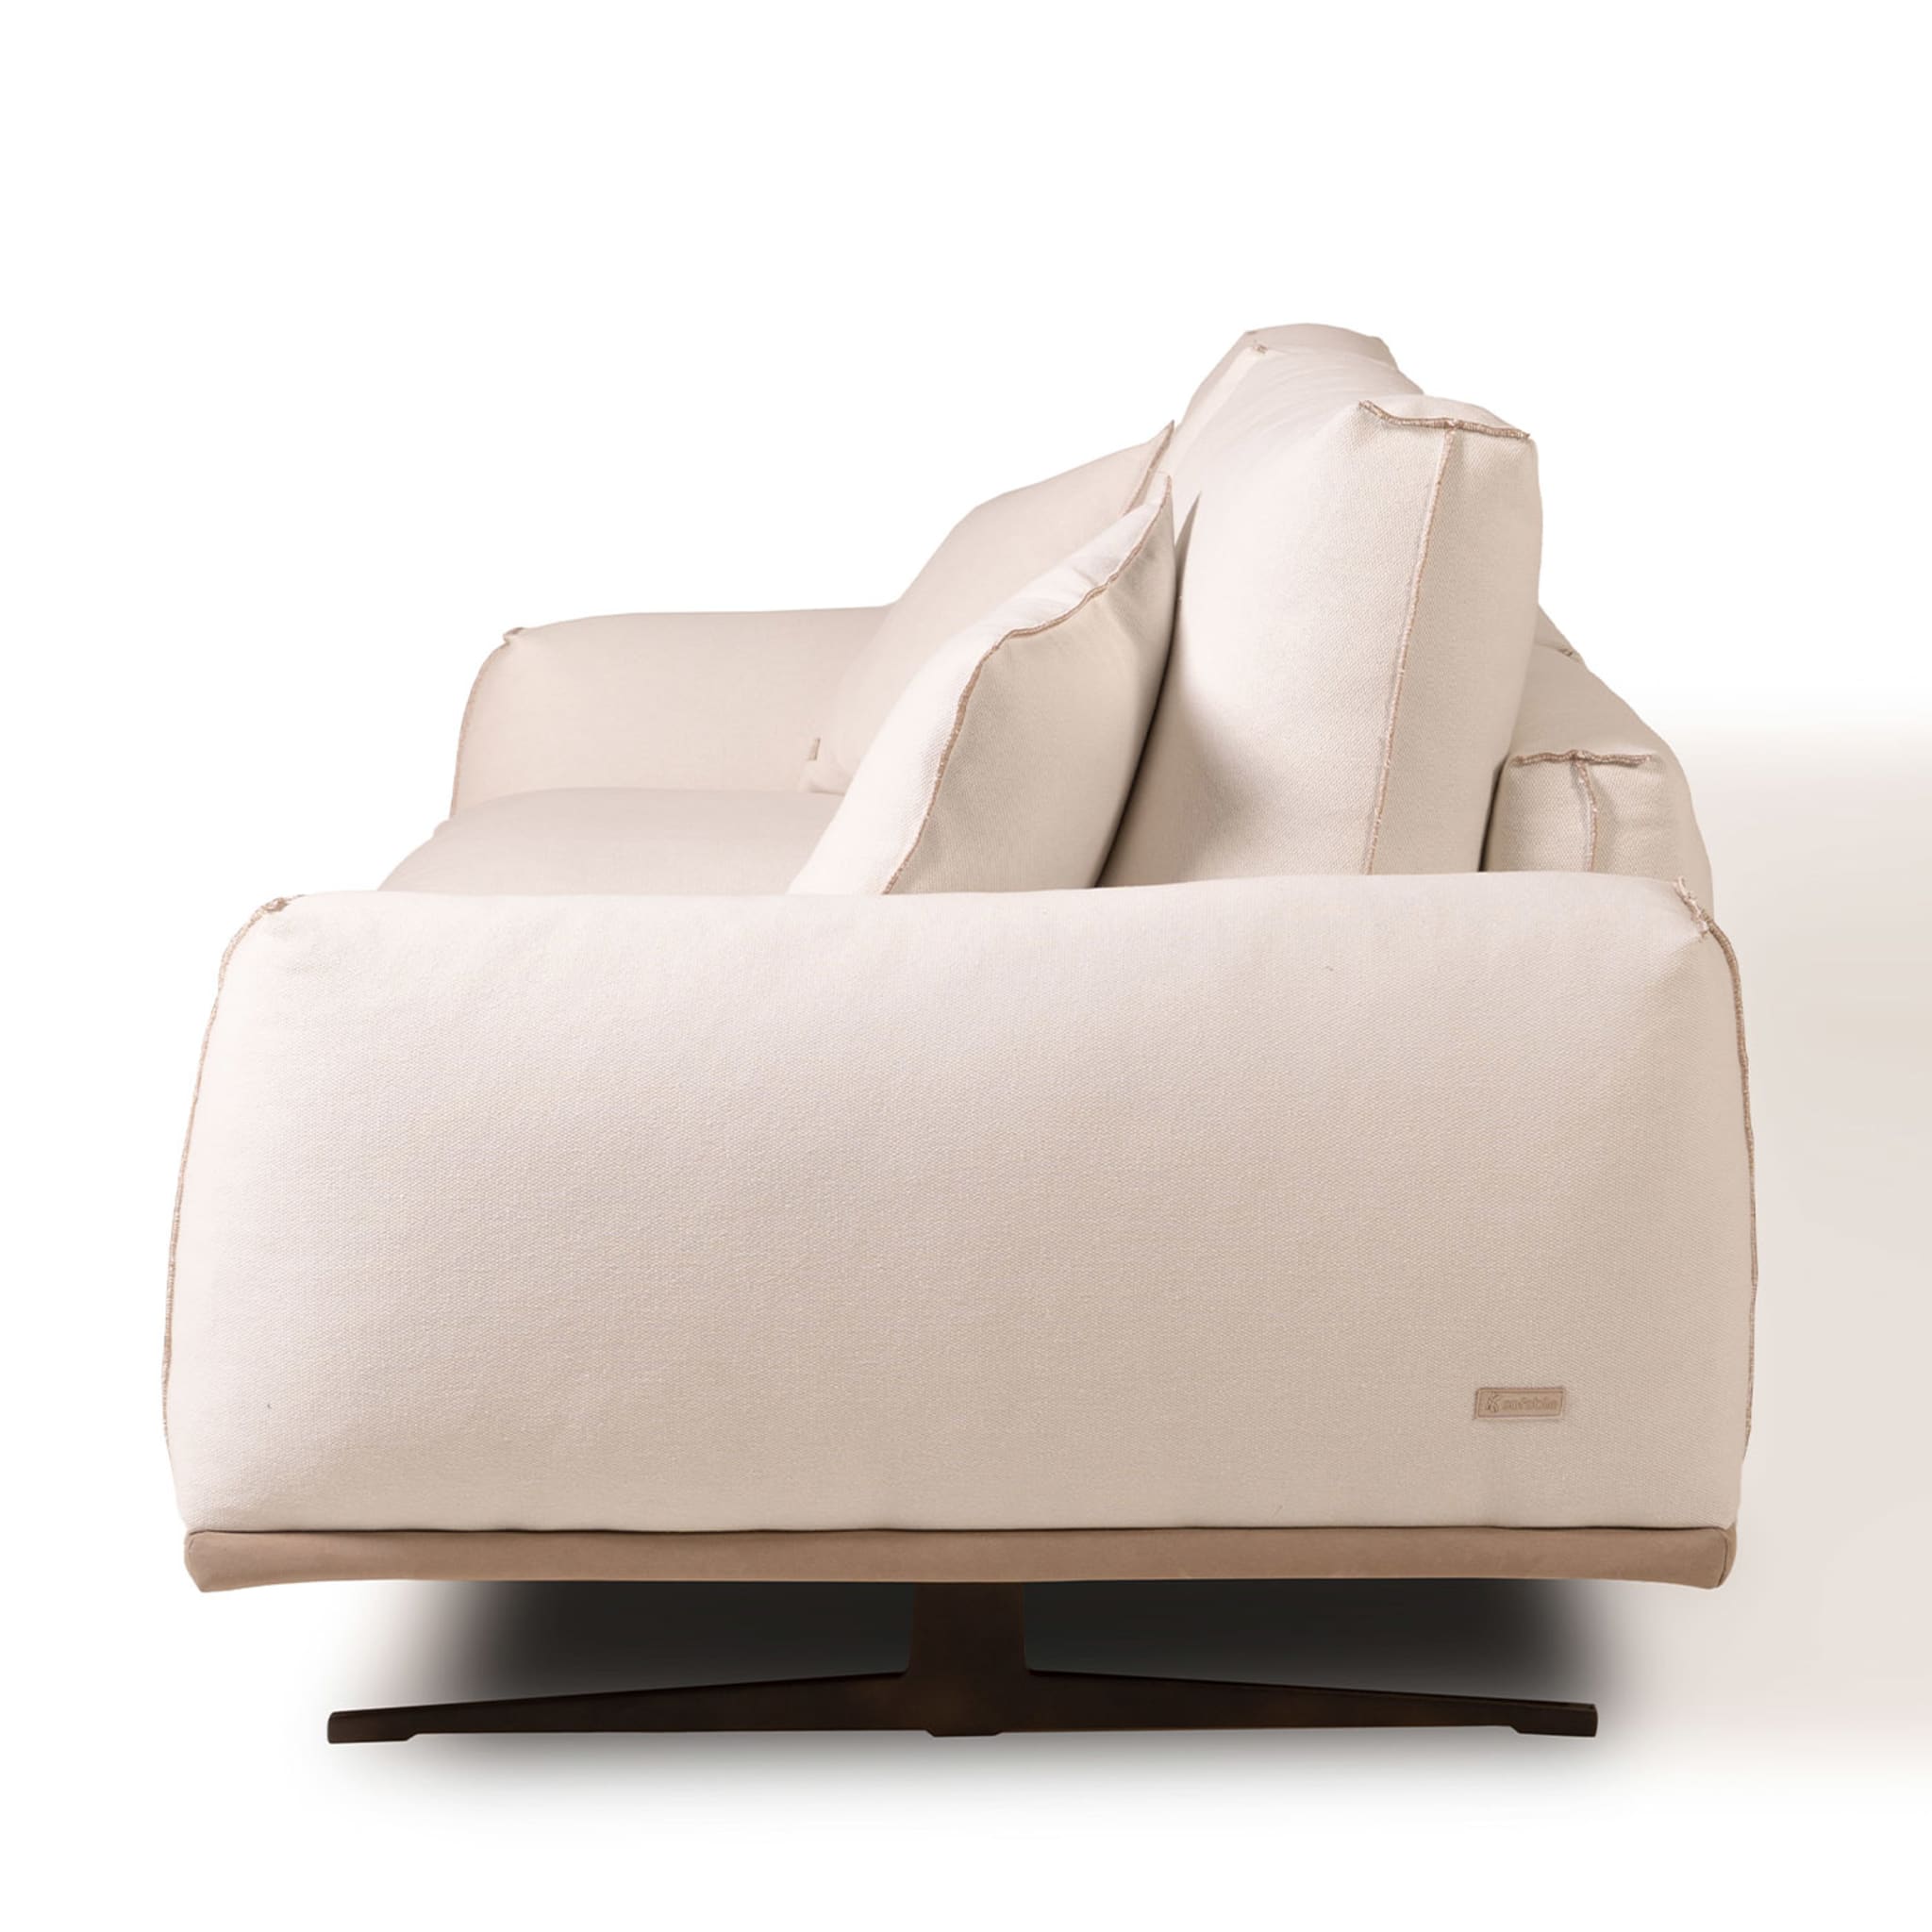 Boboli 2 Seater Sofa by Marco and Giulio Mantellassi - Alternative view 2